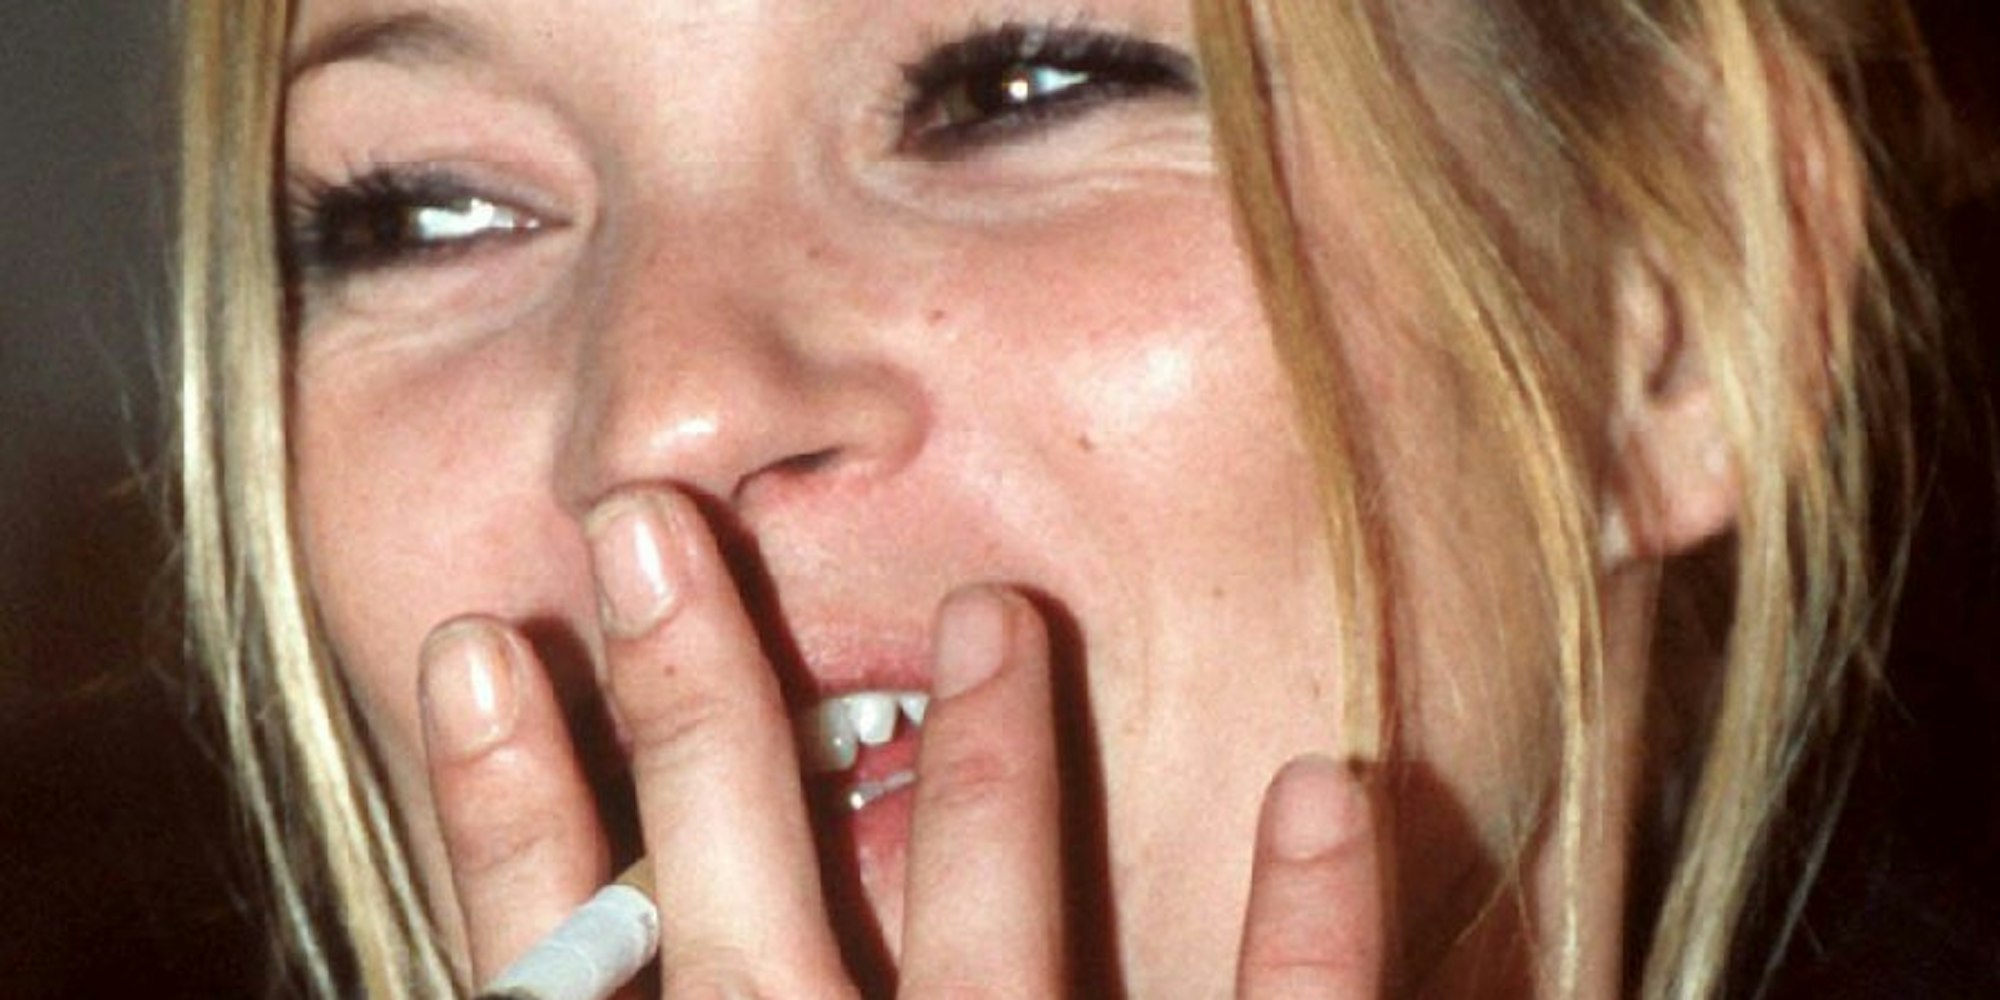 Das Kate Moss raucht, ist kein Geheimnis. Ärger gab es, als Designer Marc Jacobs das Supermodel rauchend über den Laufsteg schreiten ließ - am Weltnichtrauchertag.